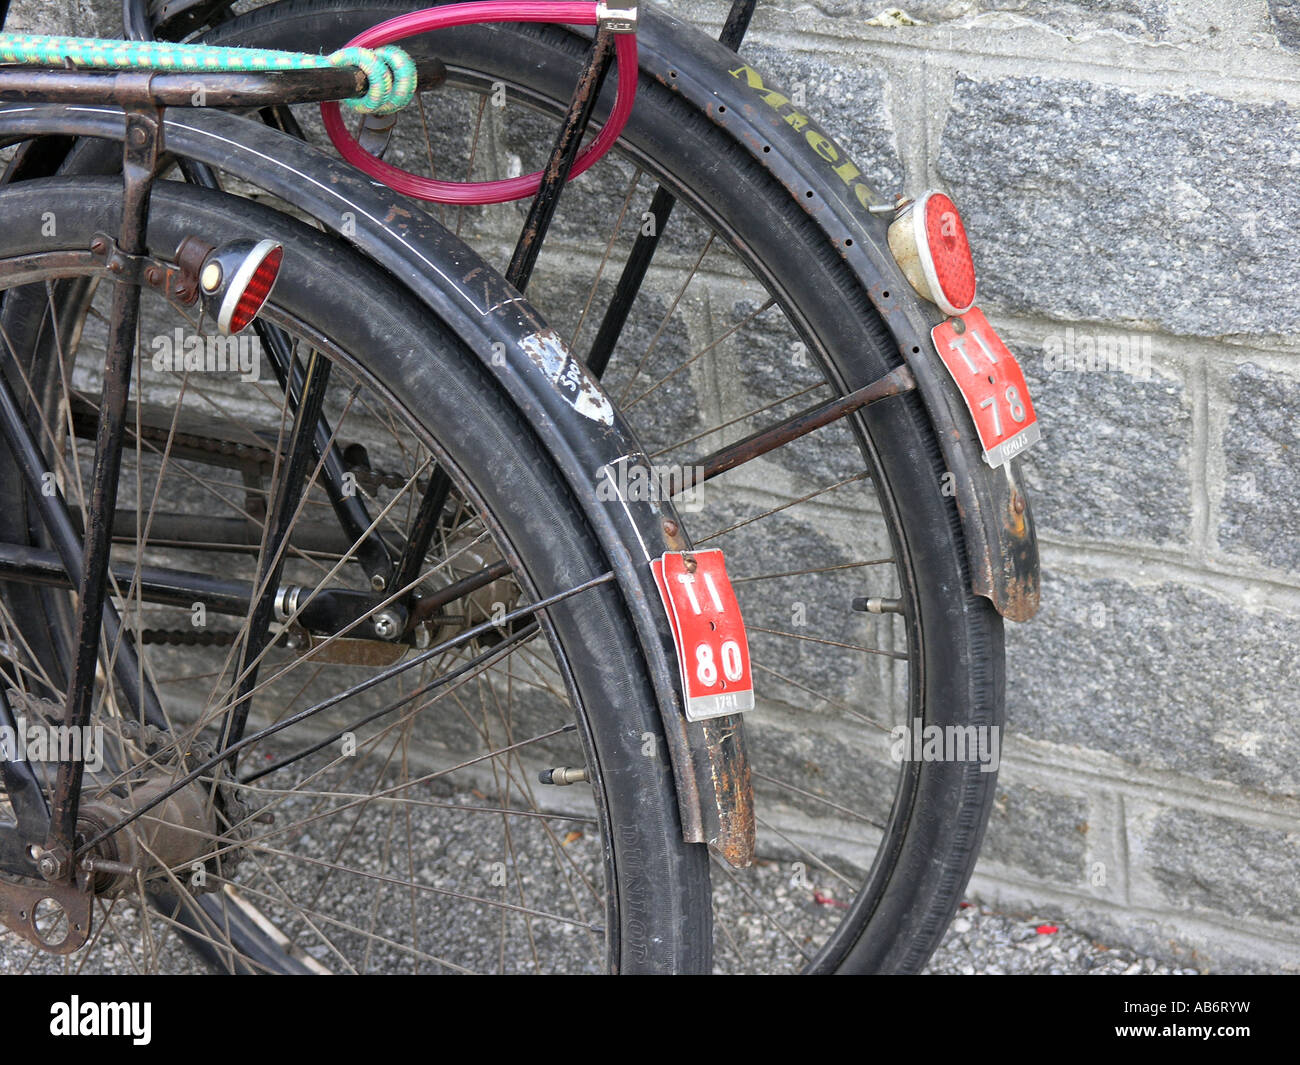 Detail der Fahrräder der Schweiz mit Nummernschildern Lugano Schweiz  Stockfotografie - Alamy